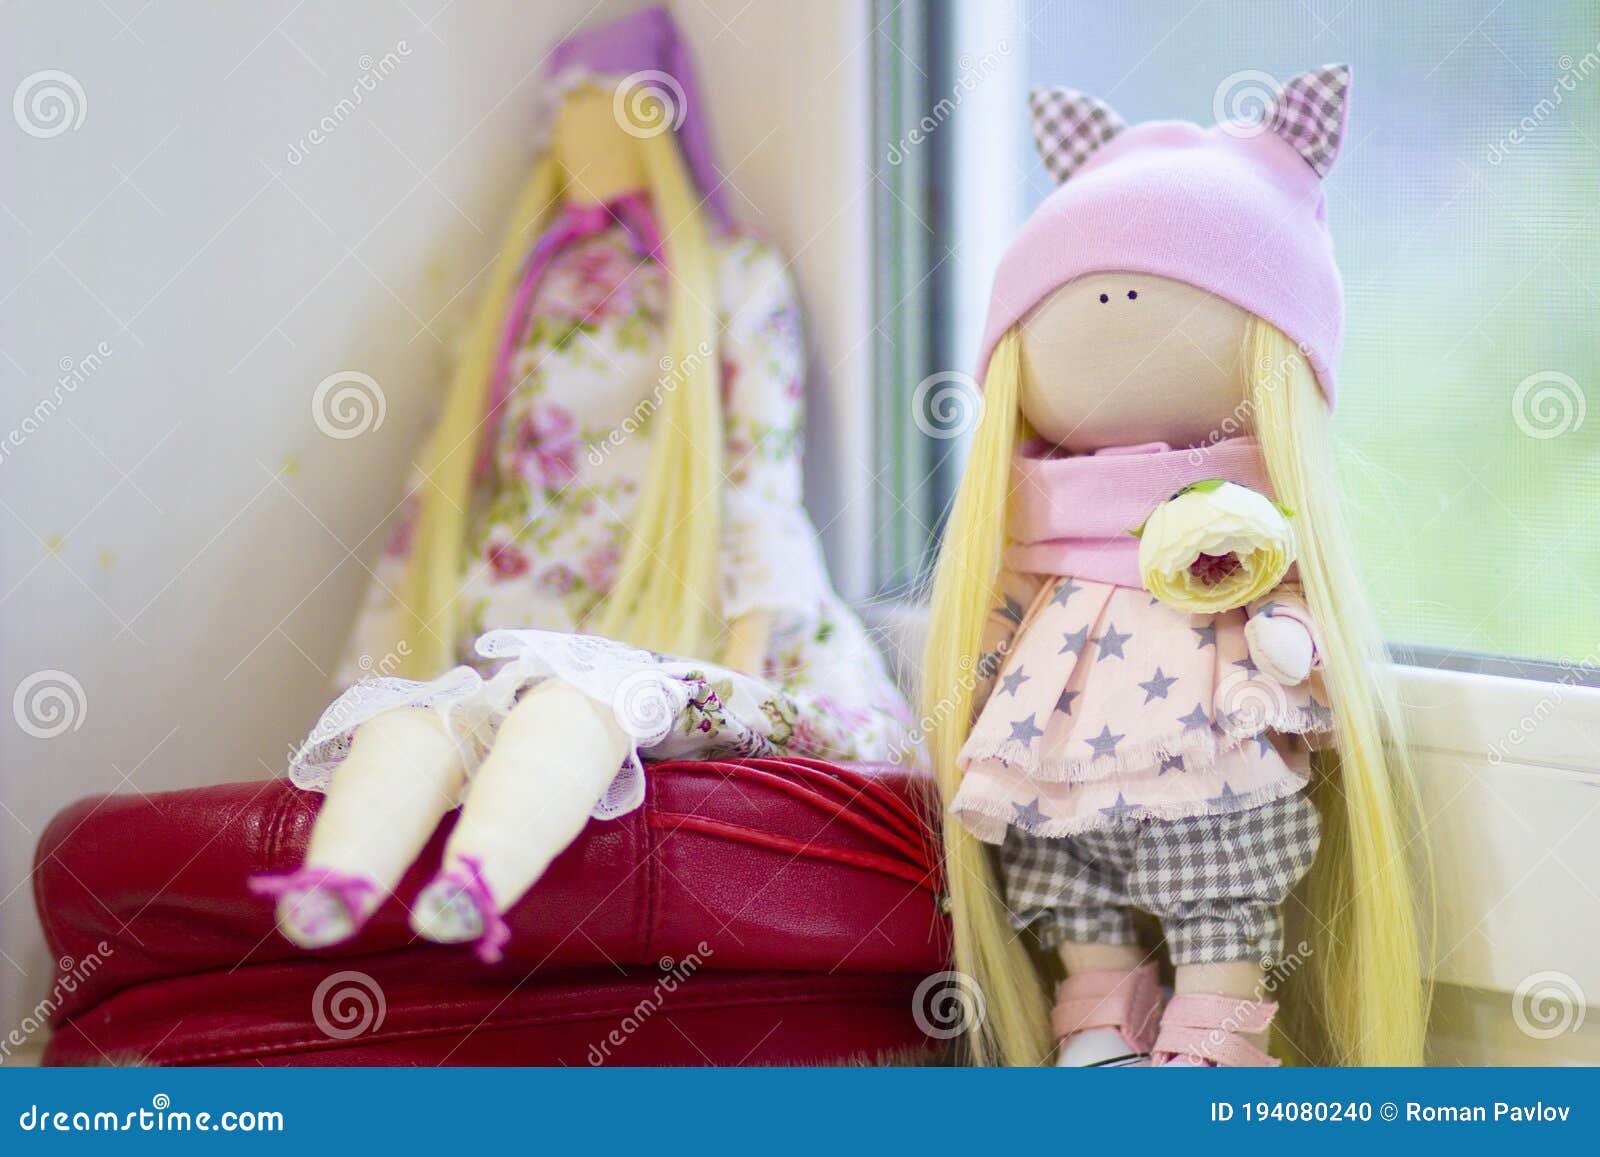 Куклы Авторской Работы Фото